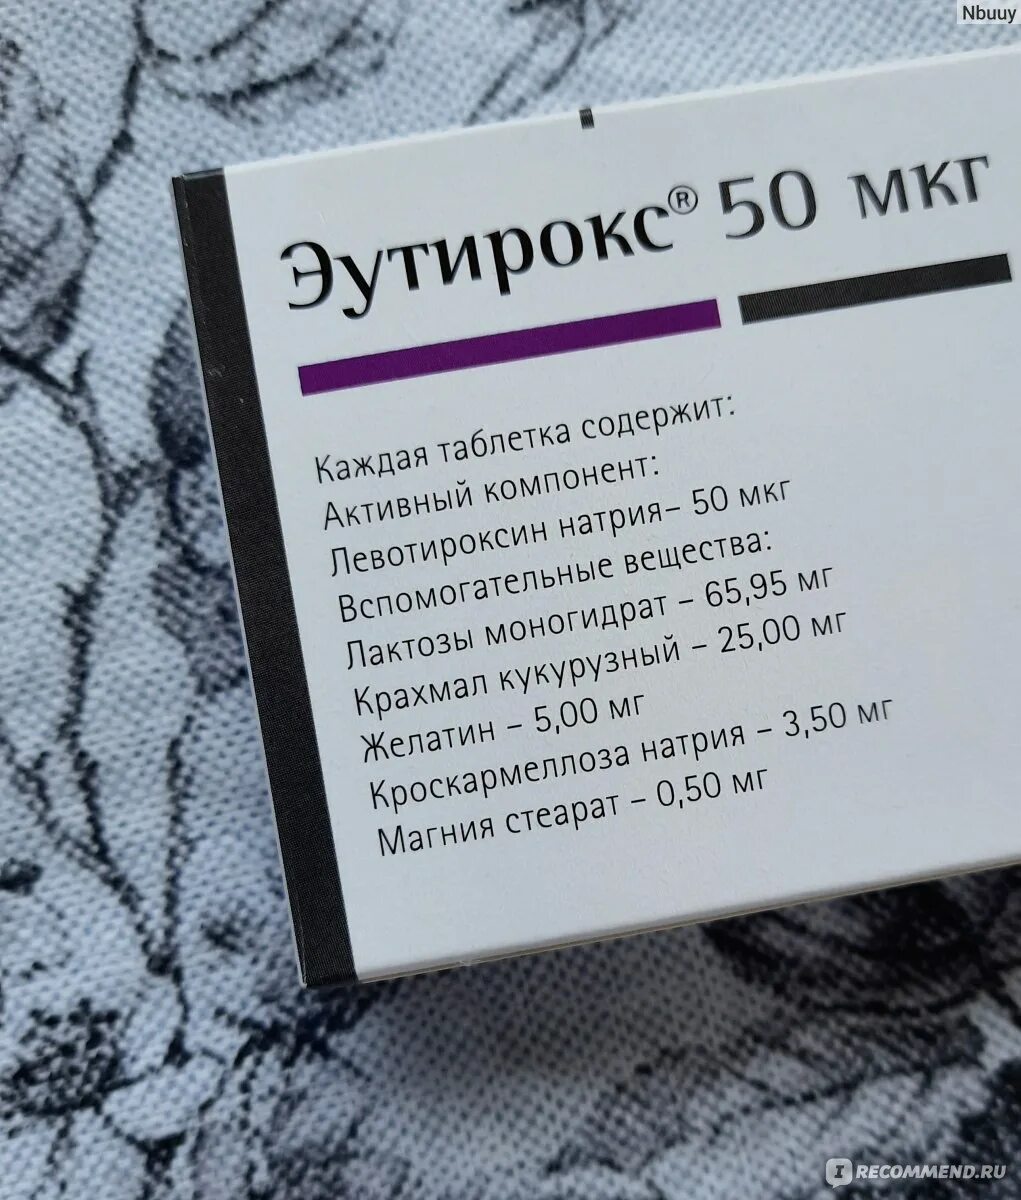 Эутирокс 25 мкг. Таблетки для щитовидной железы эутирокс 50 мг. Эутирокс таблетки 25мкг. Эутирокс 100 мг.